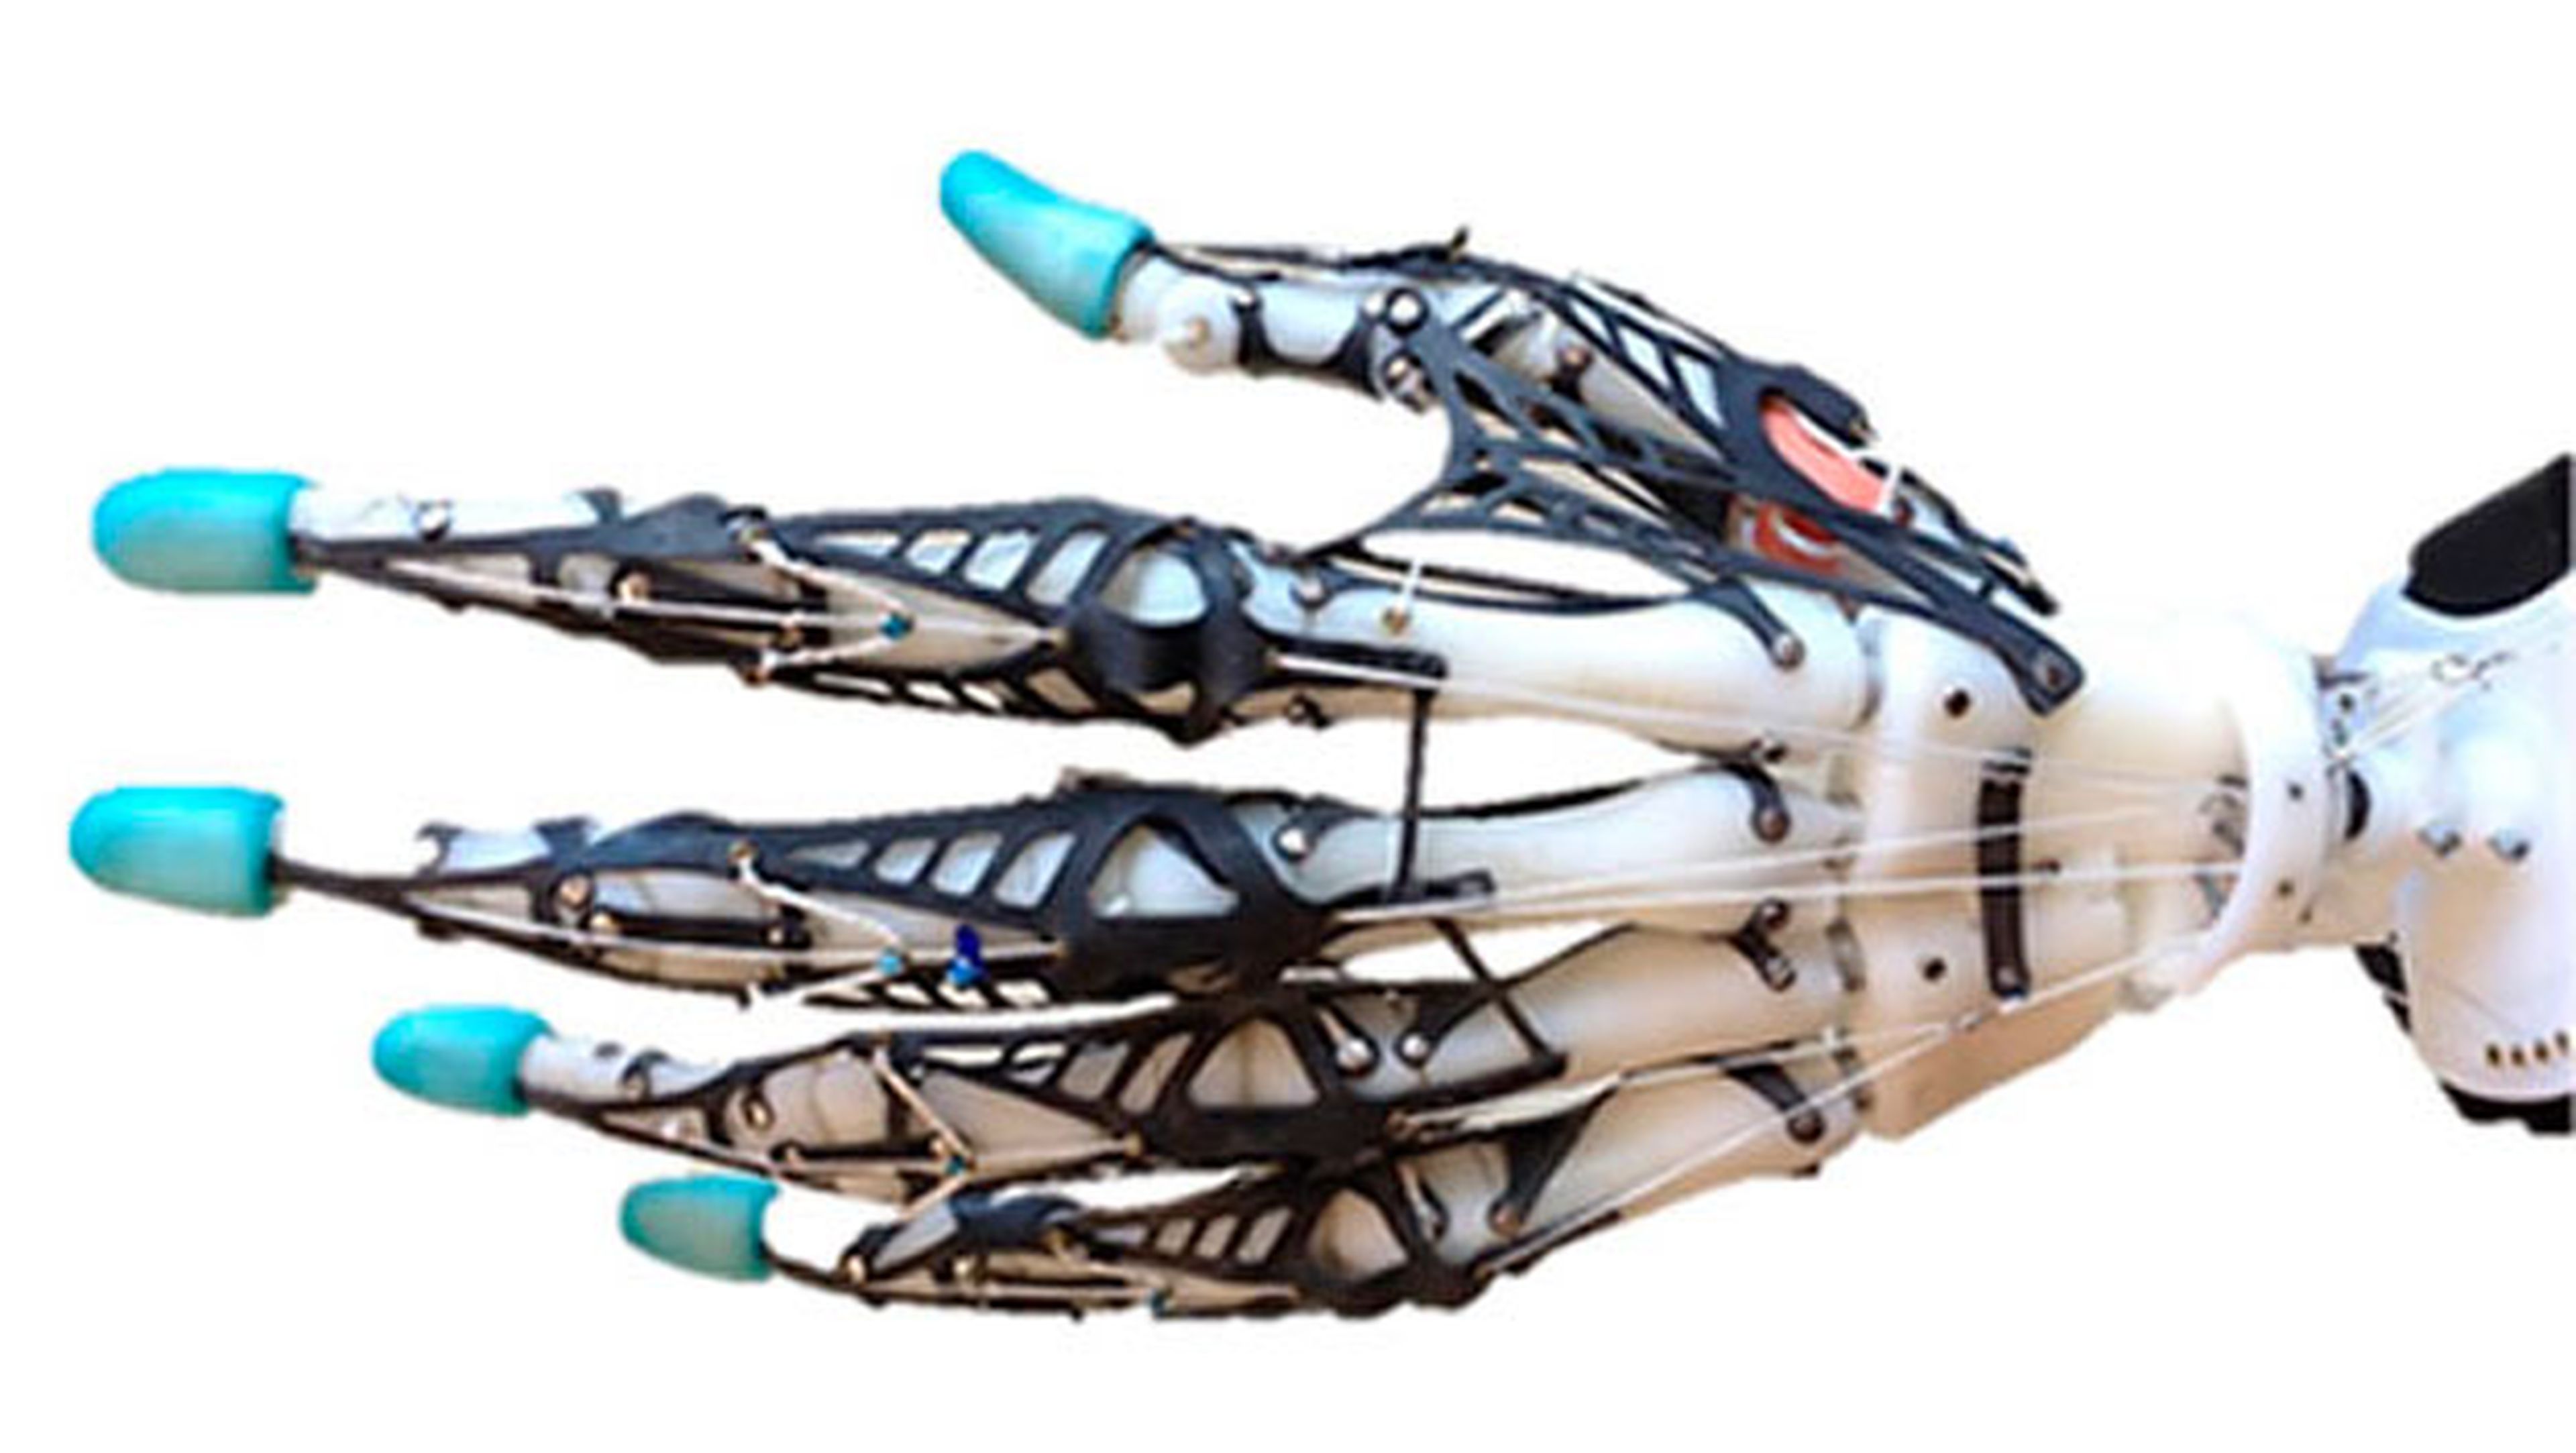 Una mano robótica reproduce fielmente los movimientos humanos | Computer Hoy